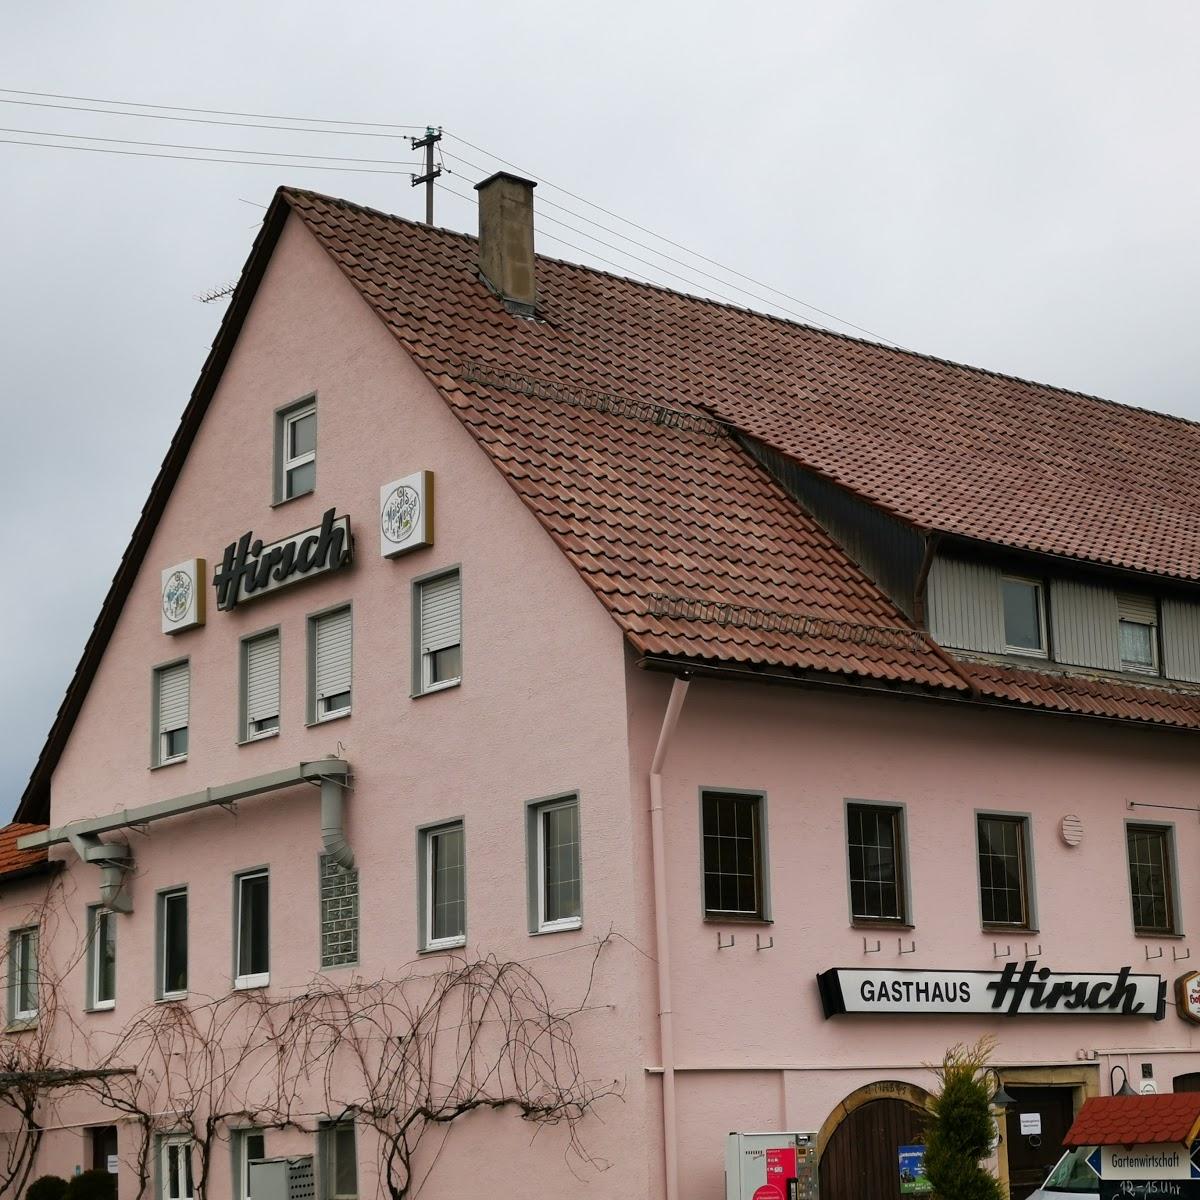 Restaurant "Hirsch" in Schorndorf